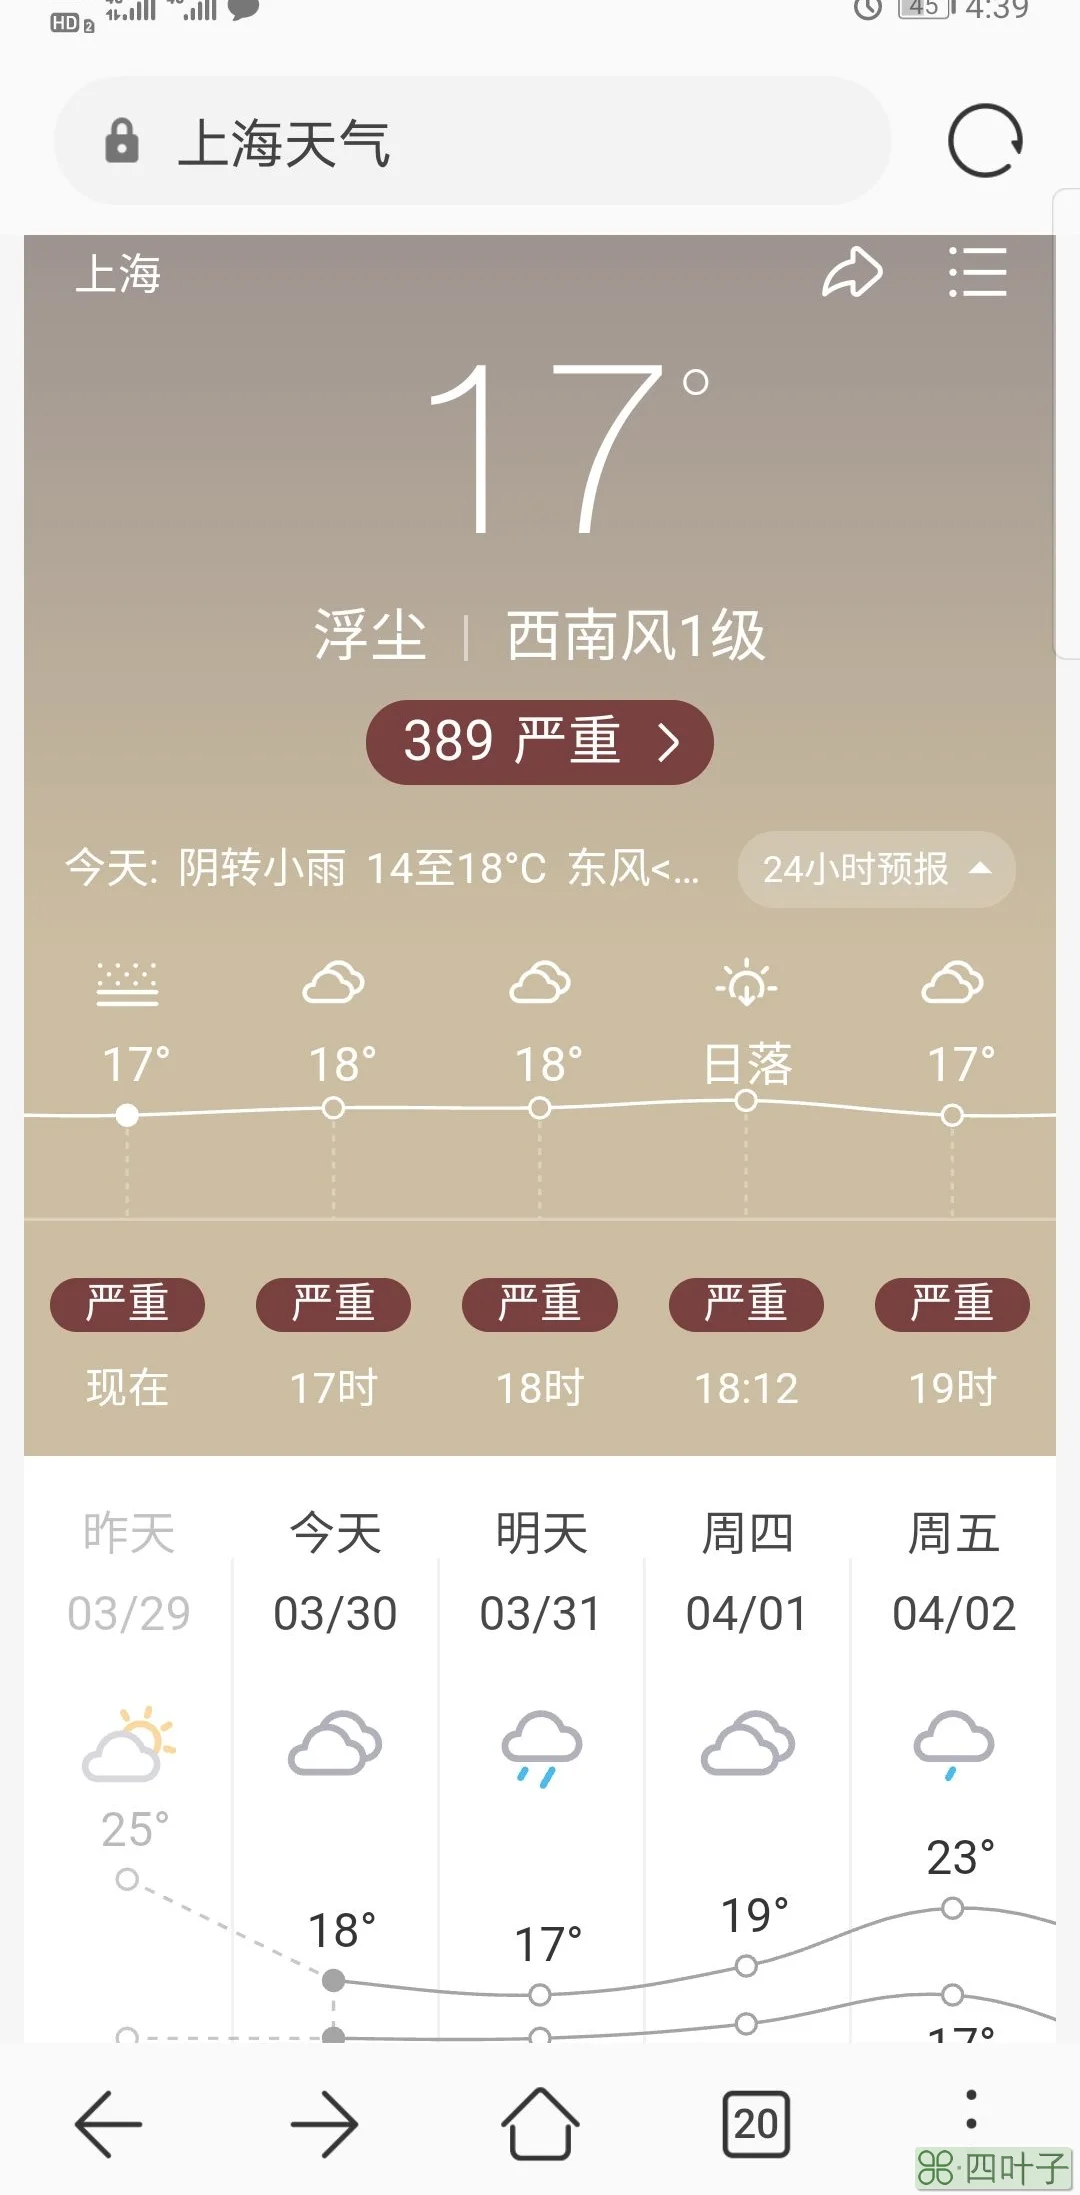 上海崇明天气预报24小时实时崇明岛天气预报7天